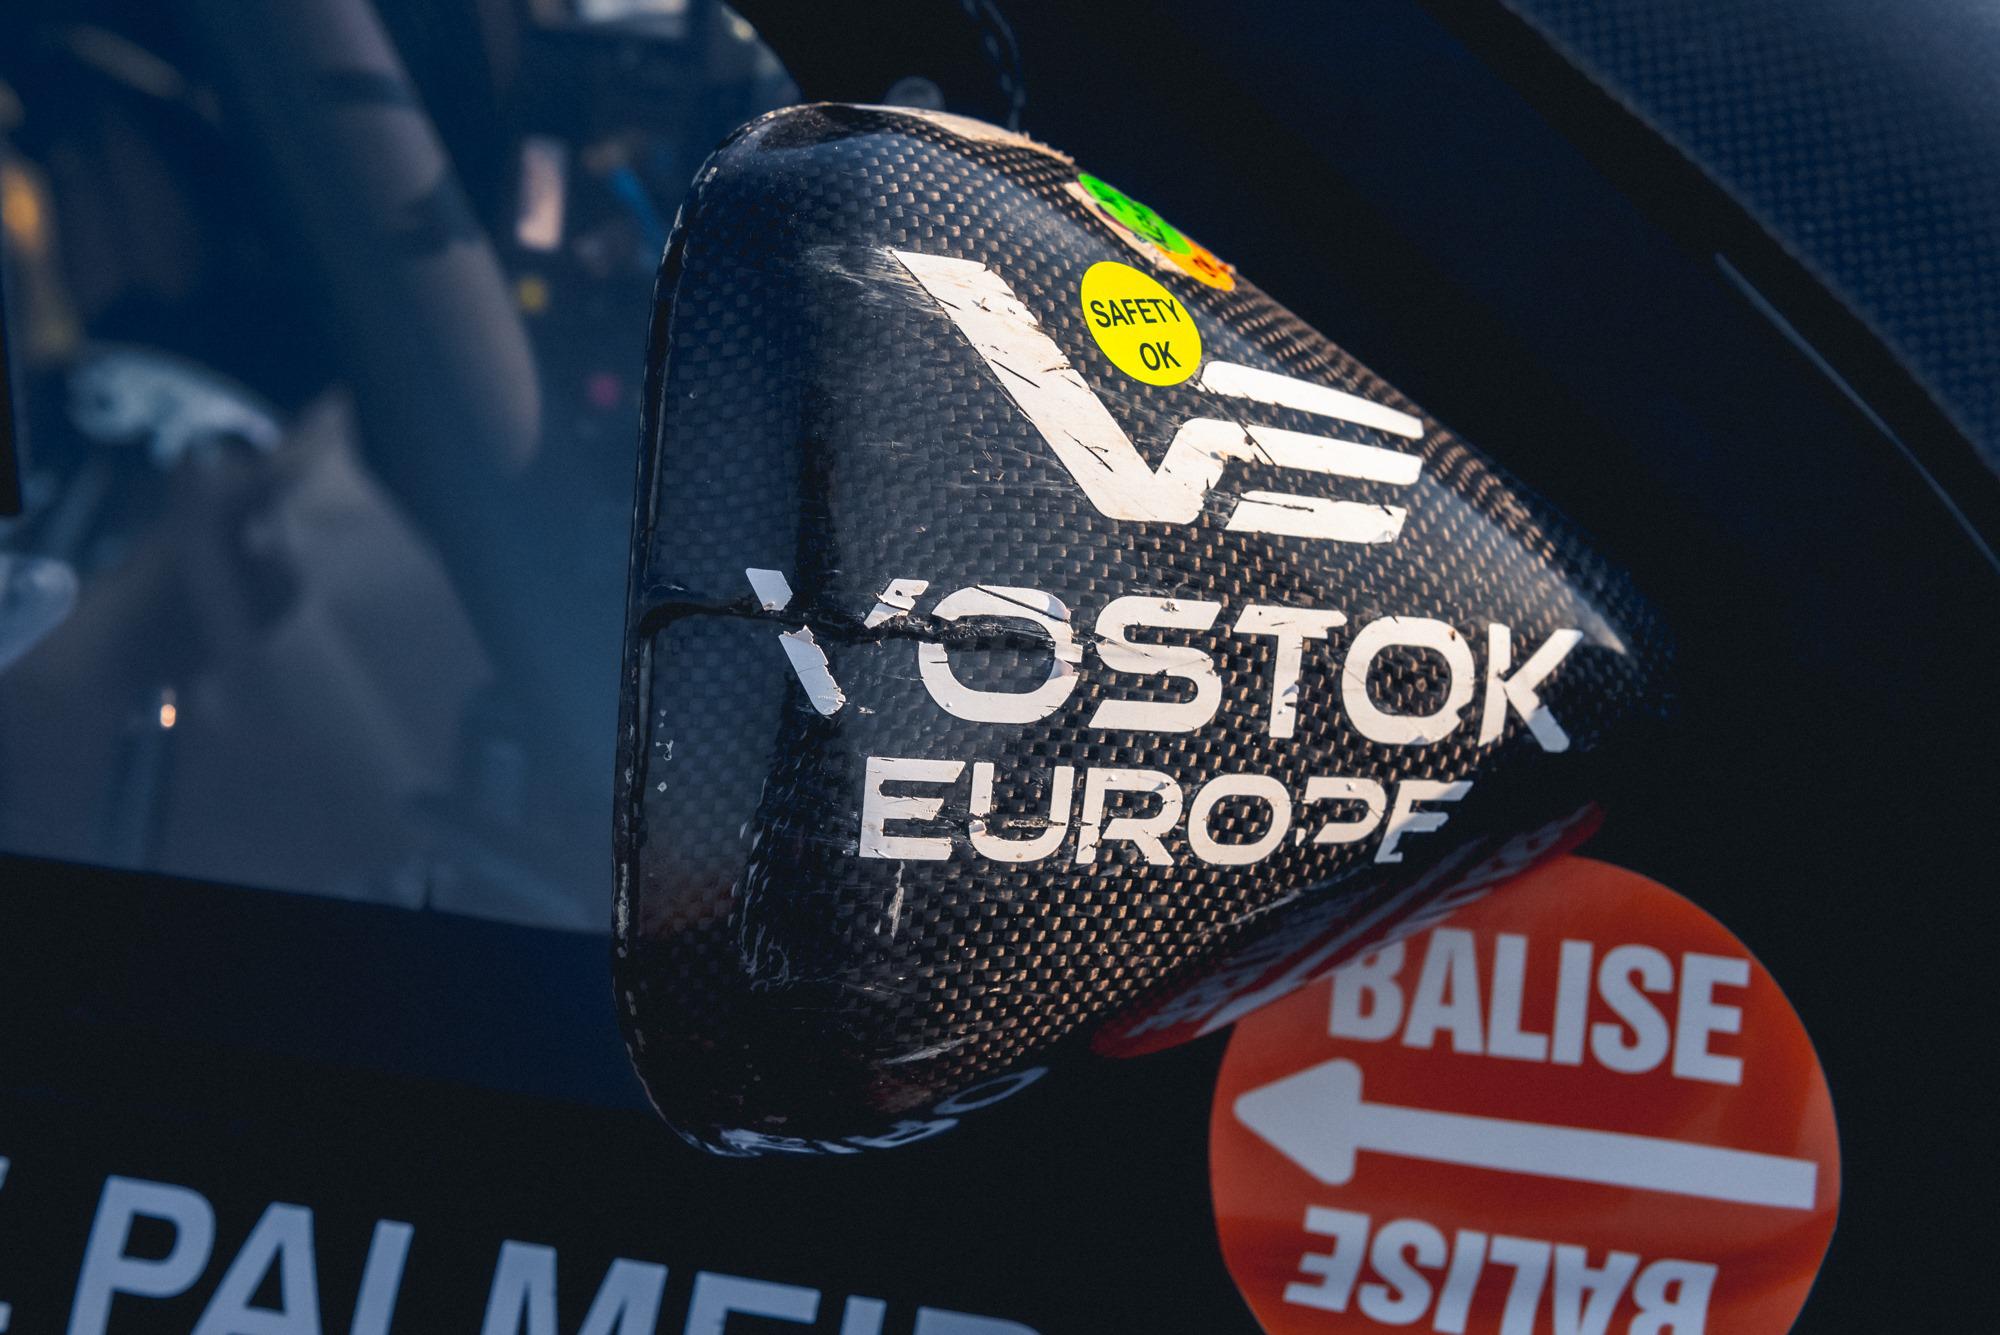 Đồng hồ Vostok Europe - Cảm hứng từ sự mạnh mẽ